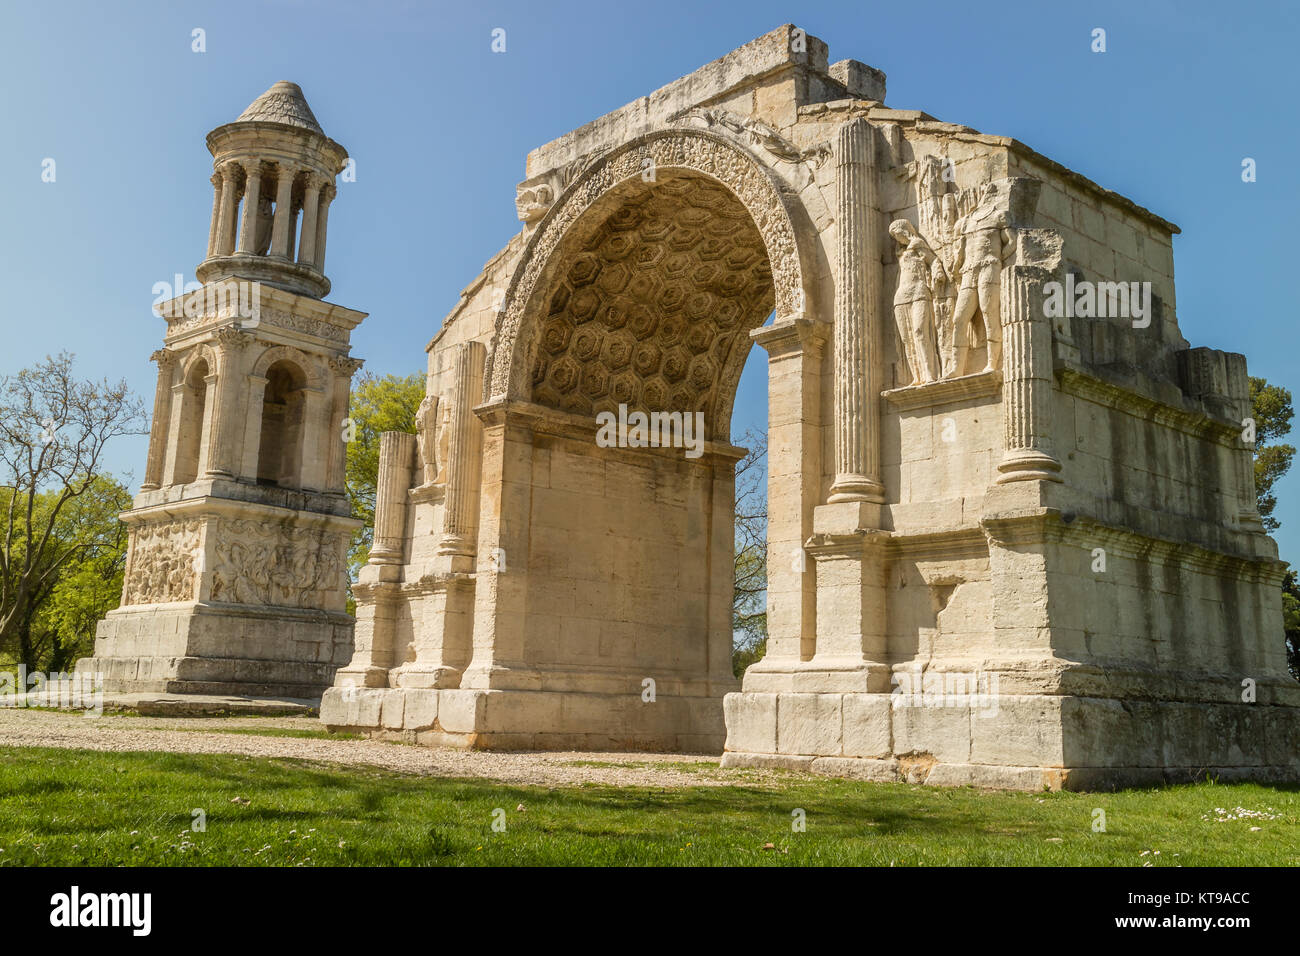 Der Triumphbogen von Glanum, & Mausoleum der Julii gerade außerhalb der nördlichen Tor des antiken Stadt Glanum, St. Remy de Provence, Frankreich. Stockfoto